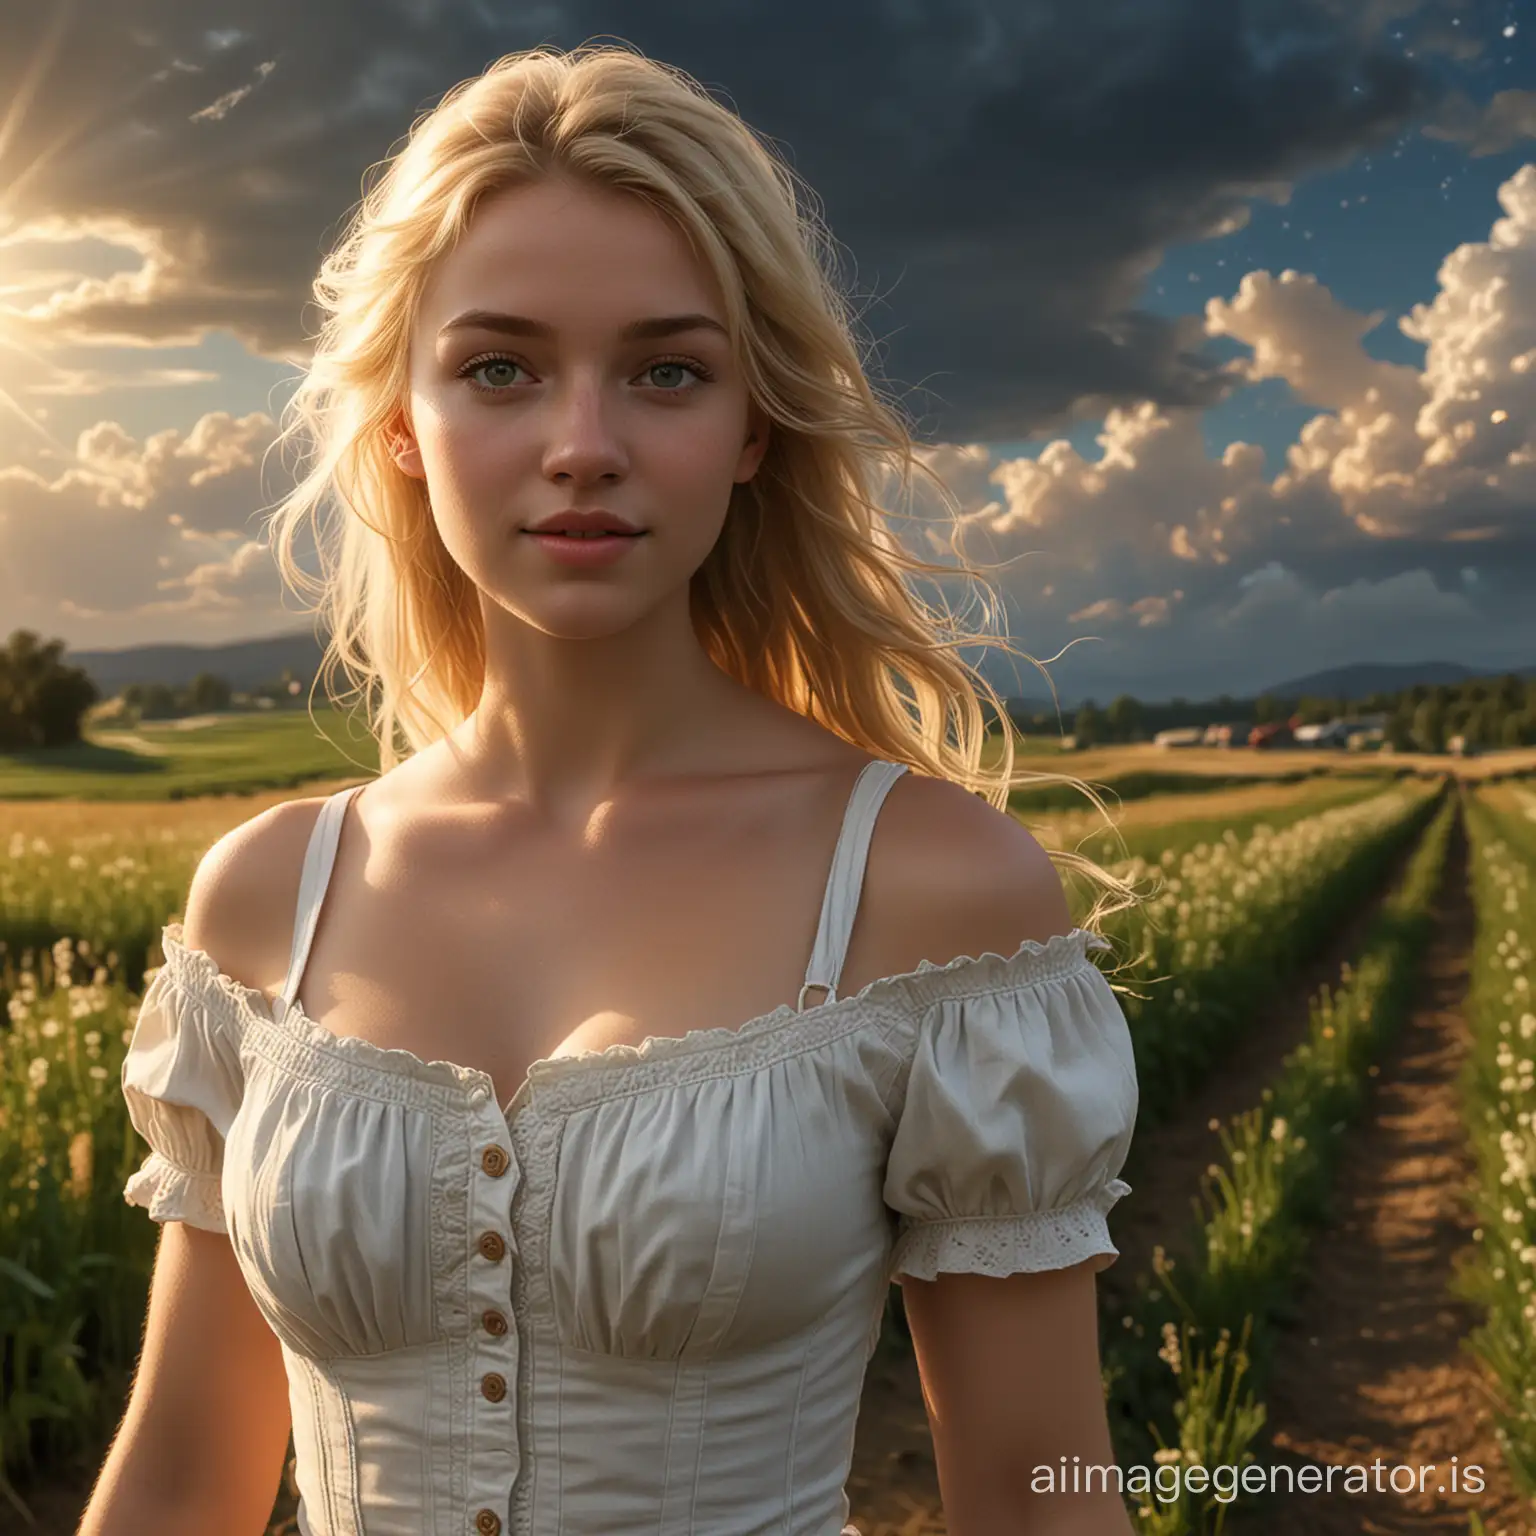 Masterpiece-Portrait-of-a-Blonde-Girl-in-Meadow-Sunlight